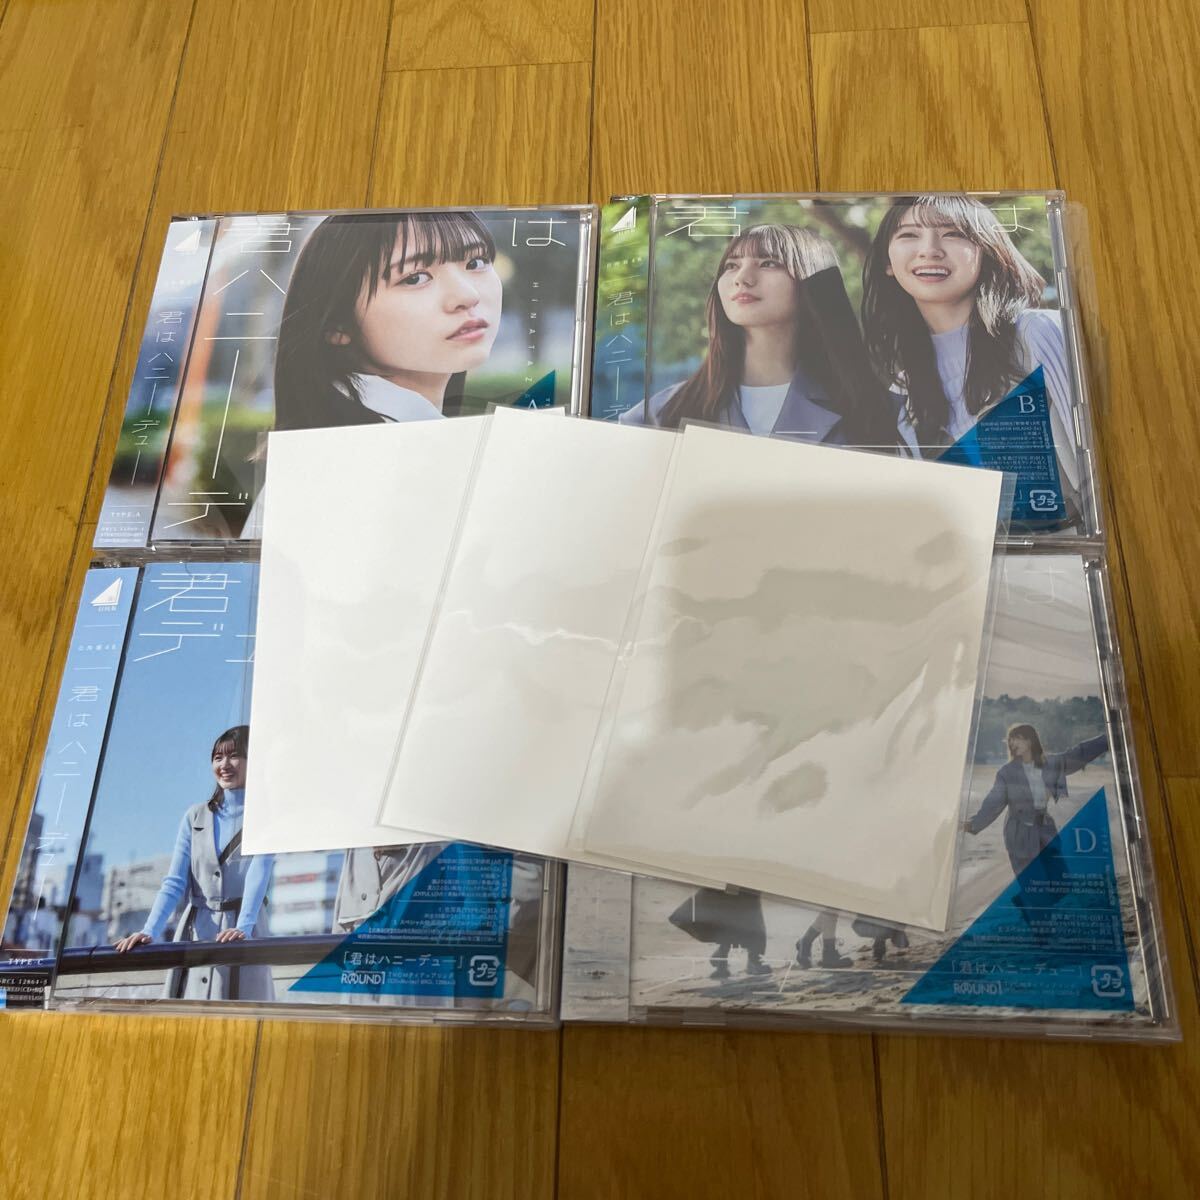 日向坂46 11th 君はハニーデュー CD Blu-ra初回仕様限定盤ABCD 4枚セット 写真3枚付きの画像1